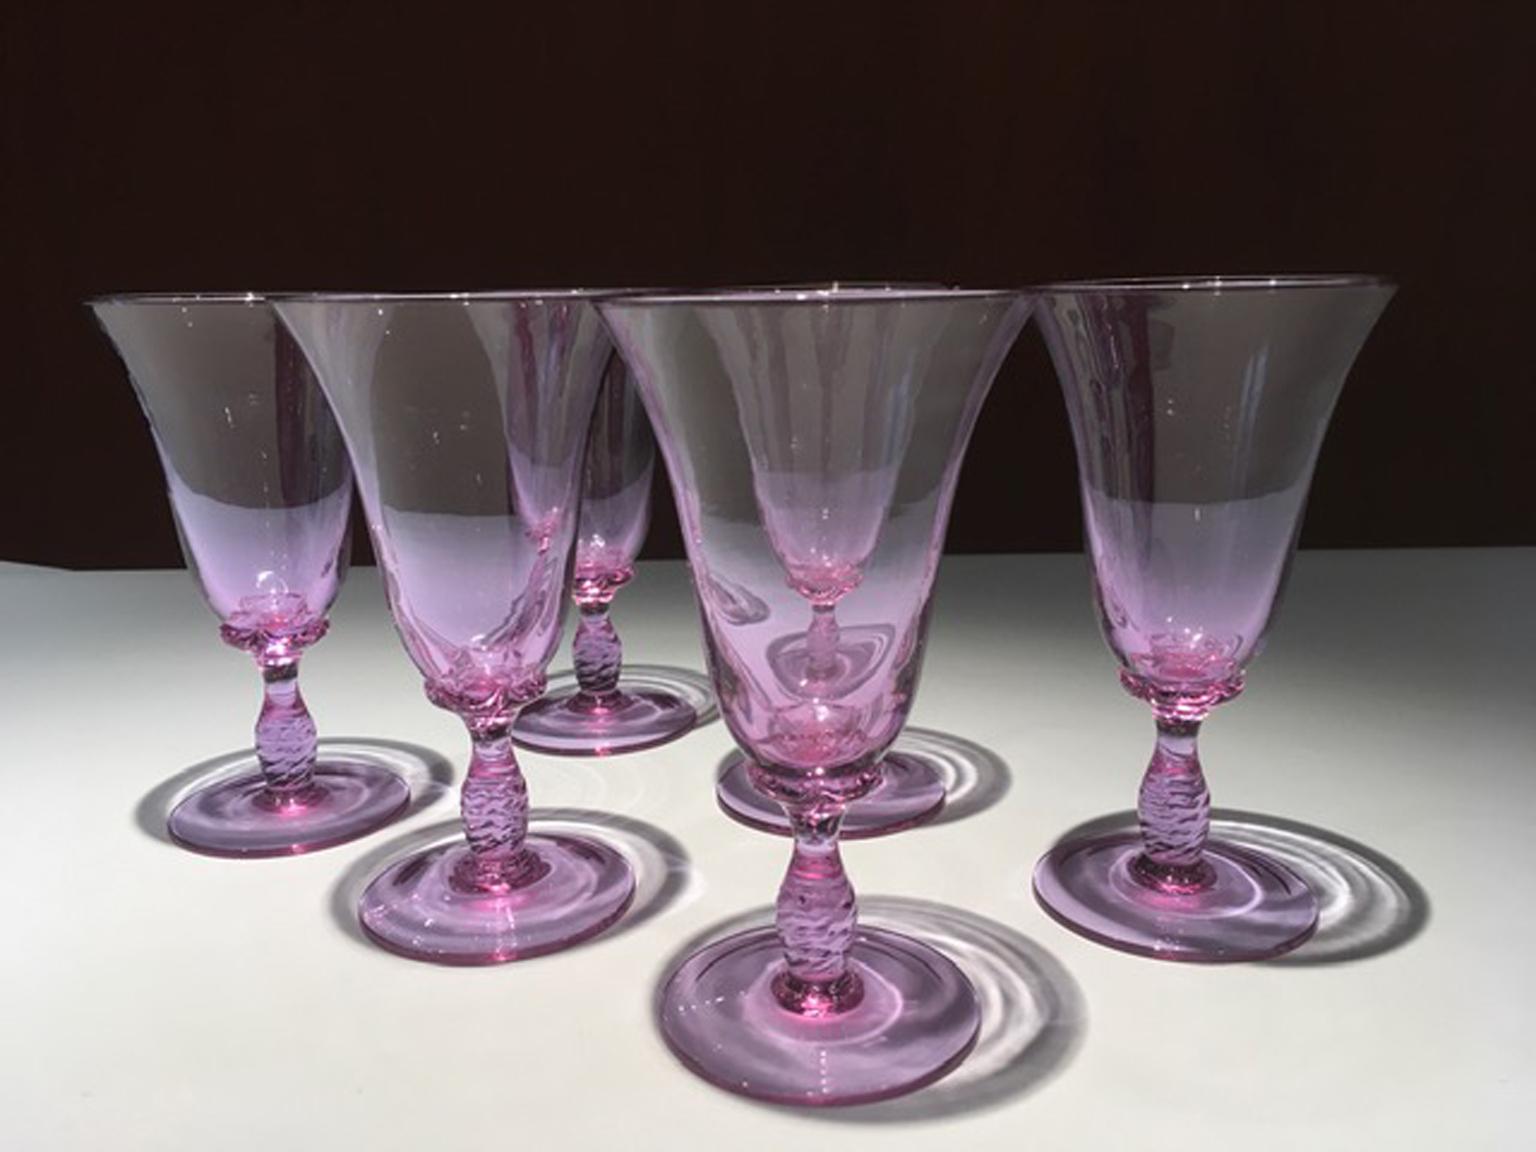 Cet ensemble de verres soufflés en verre violet de Murano a été fabriqué à la main à Murano, Venise, au milieu du siècle dernier, vers 1960.  Il s'agit d'un ensemble de verres très élégants et raffinés à utiliser pour organiser une table de fête ou